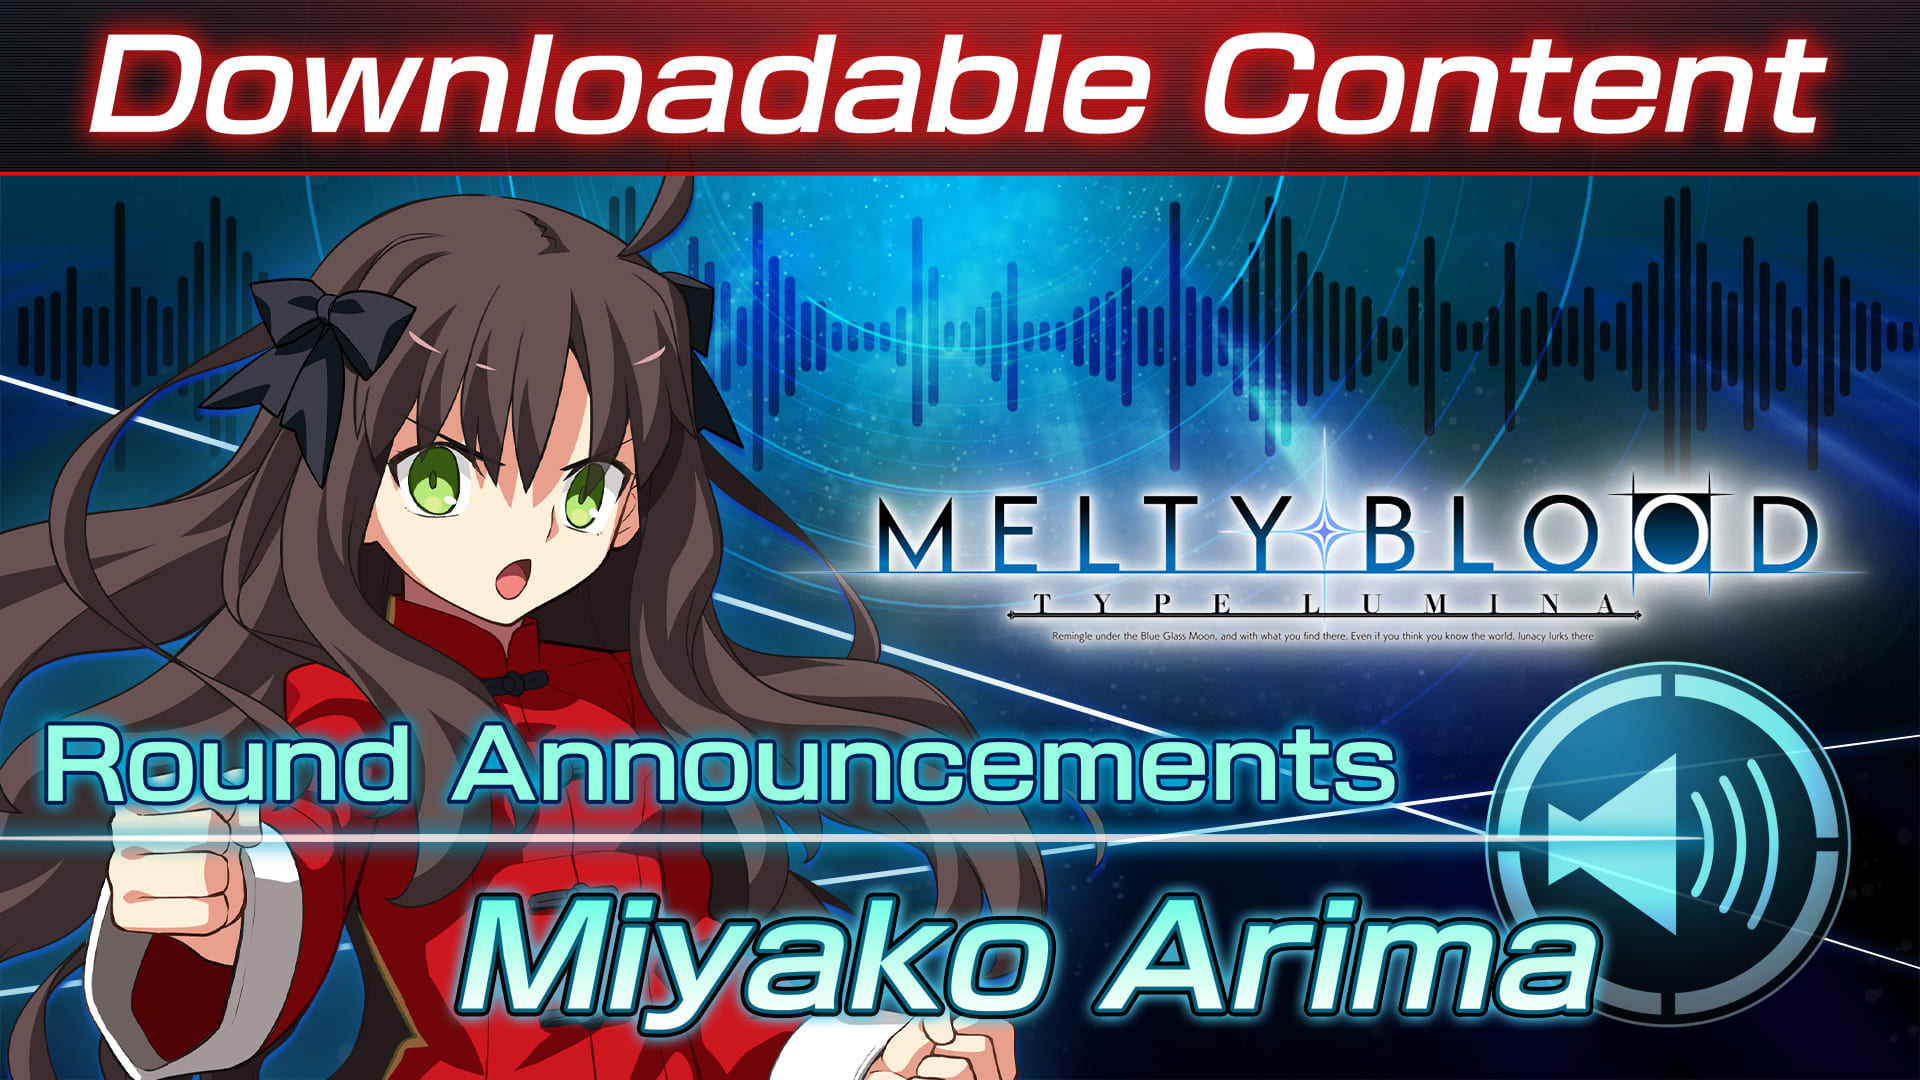 Contenido adicional: "Miyako Arima Round Announcements"